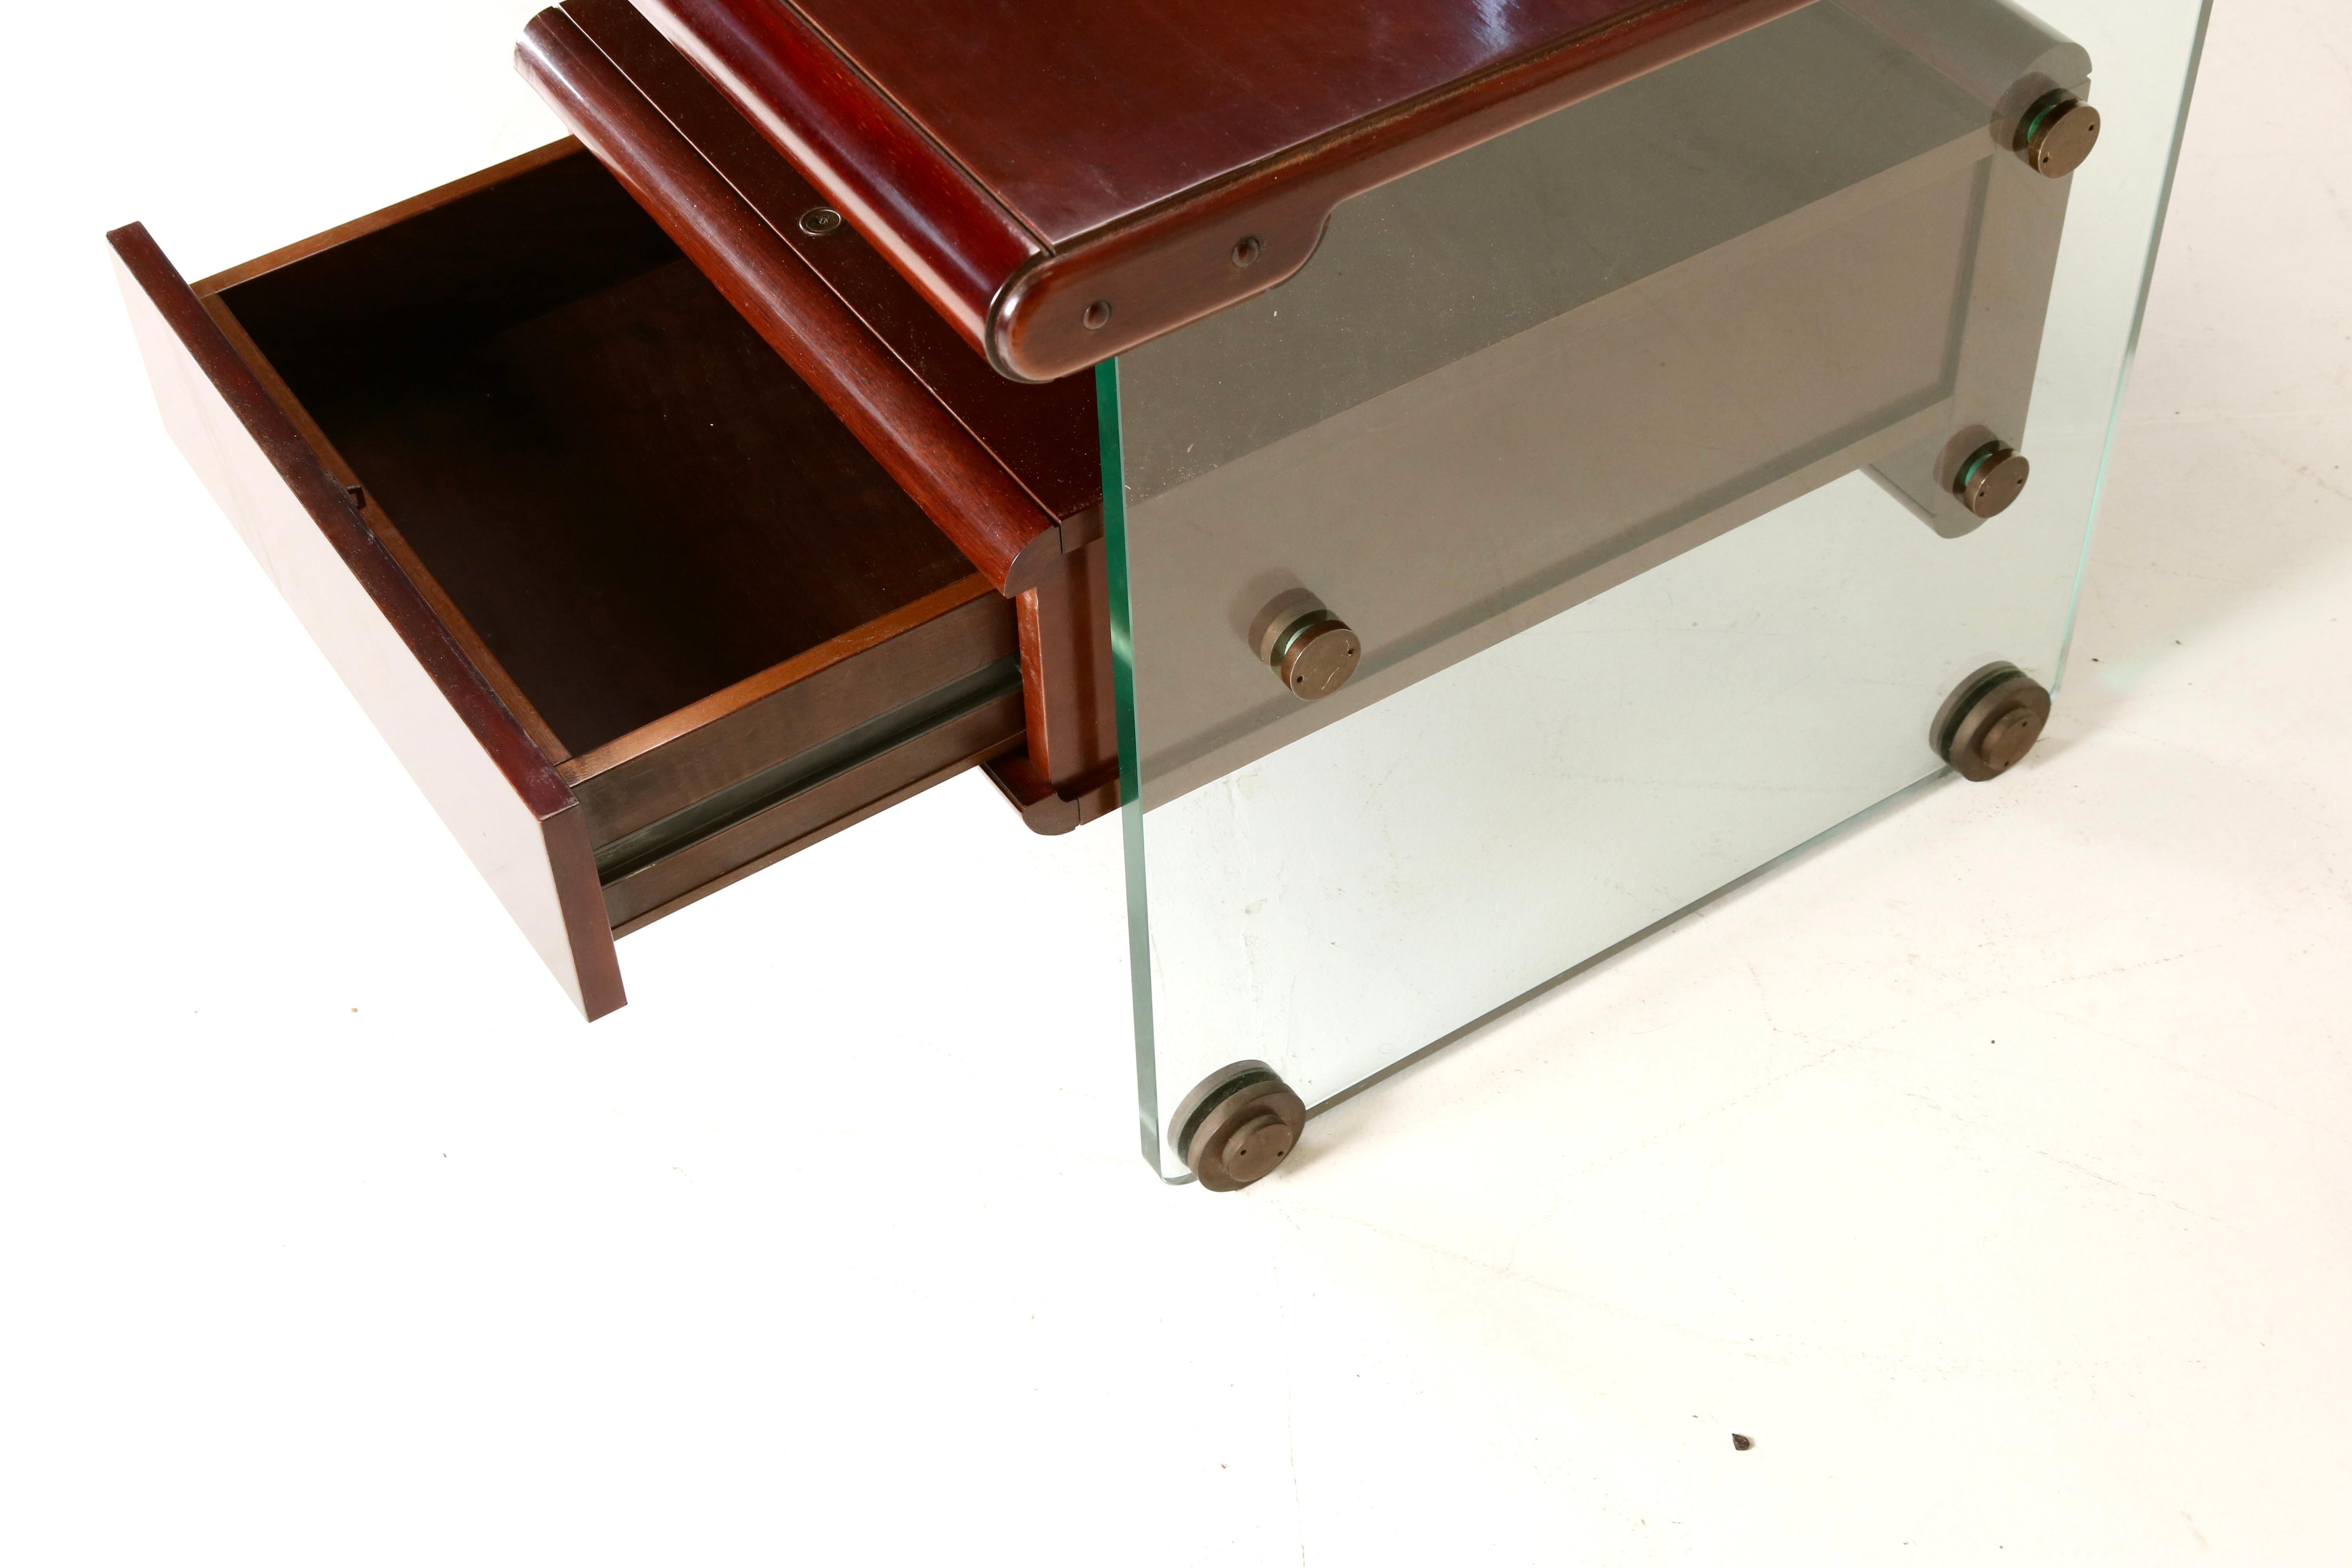 Fabio Lenci Elegant presidential Desk - Wood top and legs, Italian Design, 60s 2